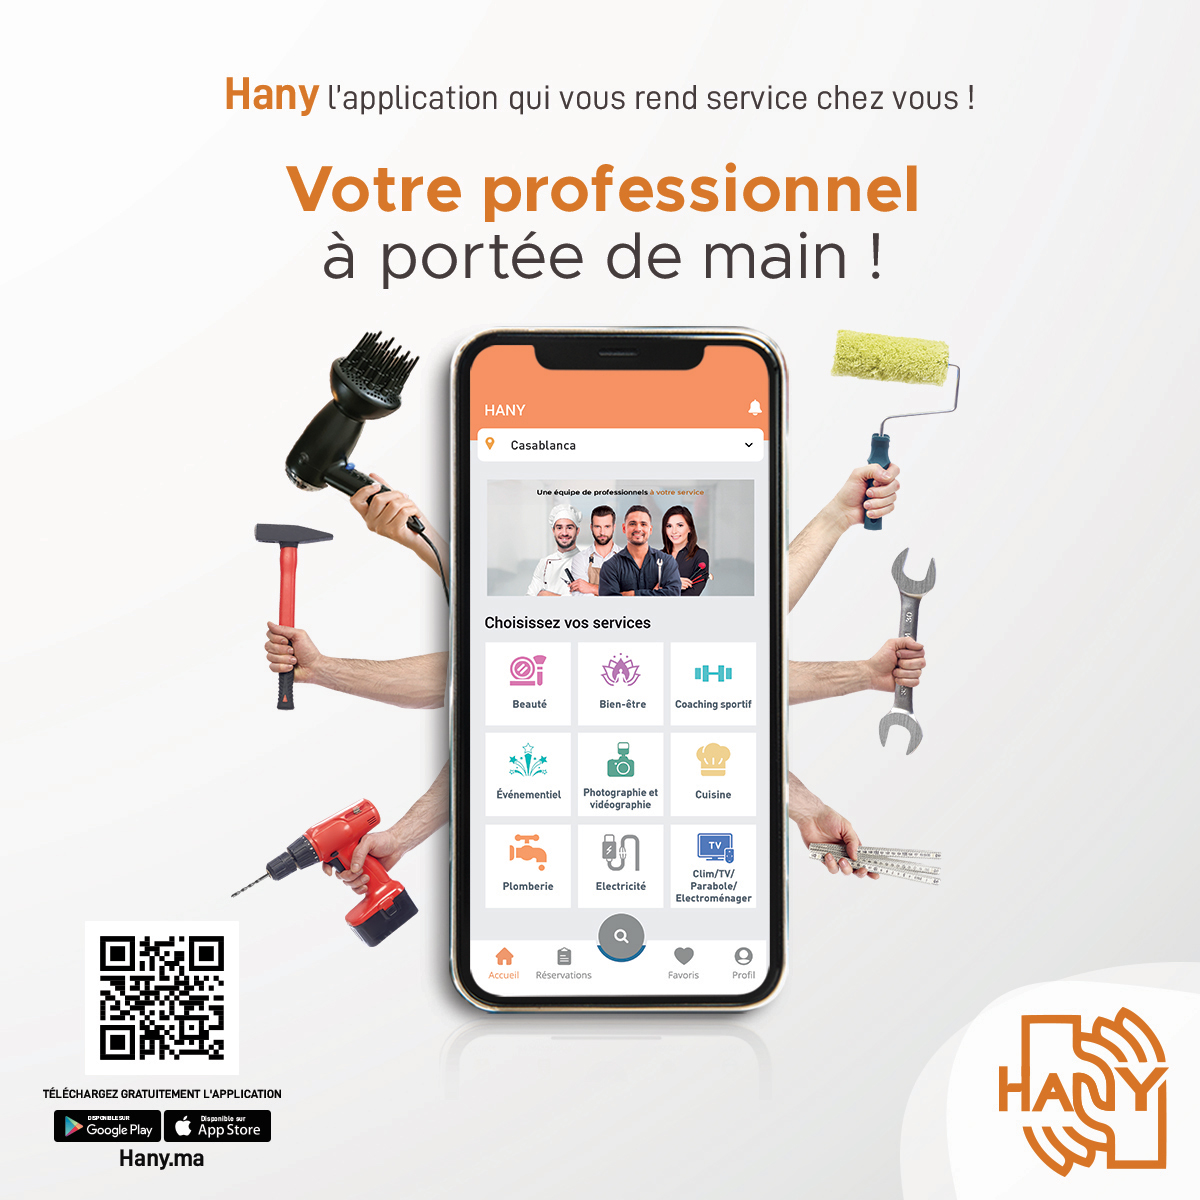 Maroc : la plateforme Hany révolutionne le service professionnel à domicile